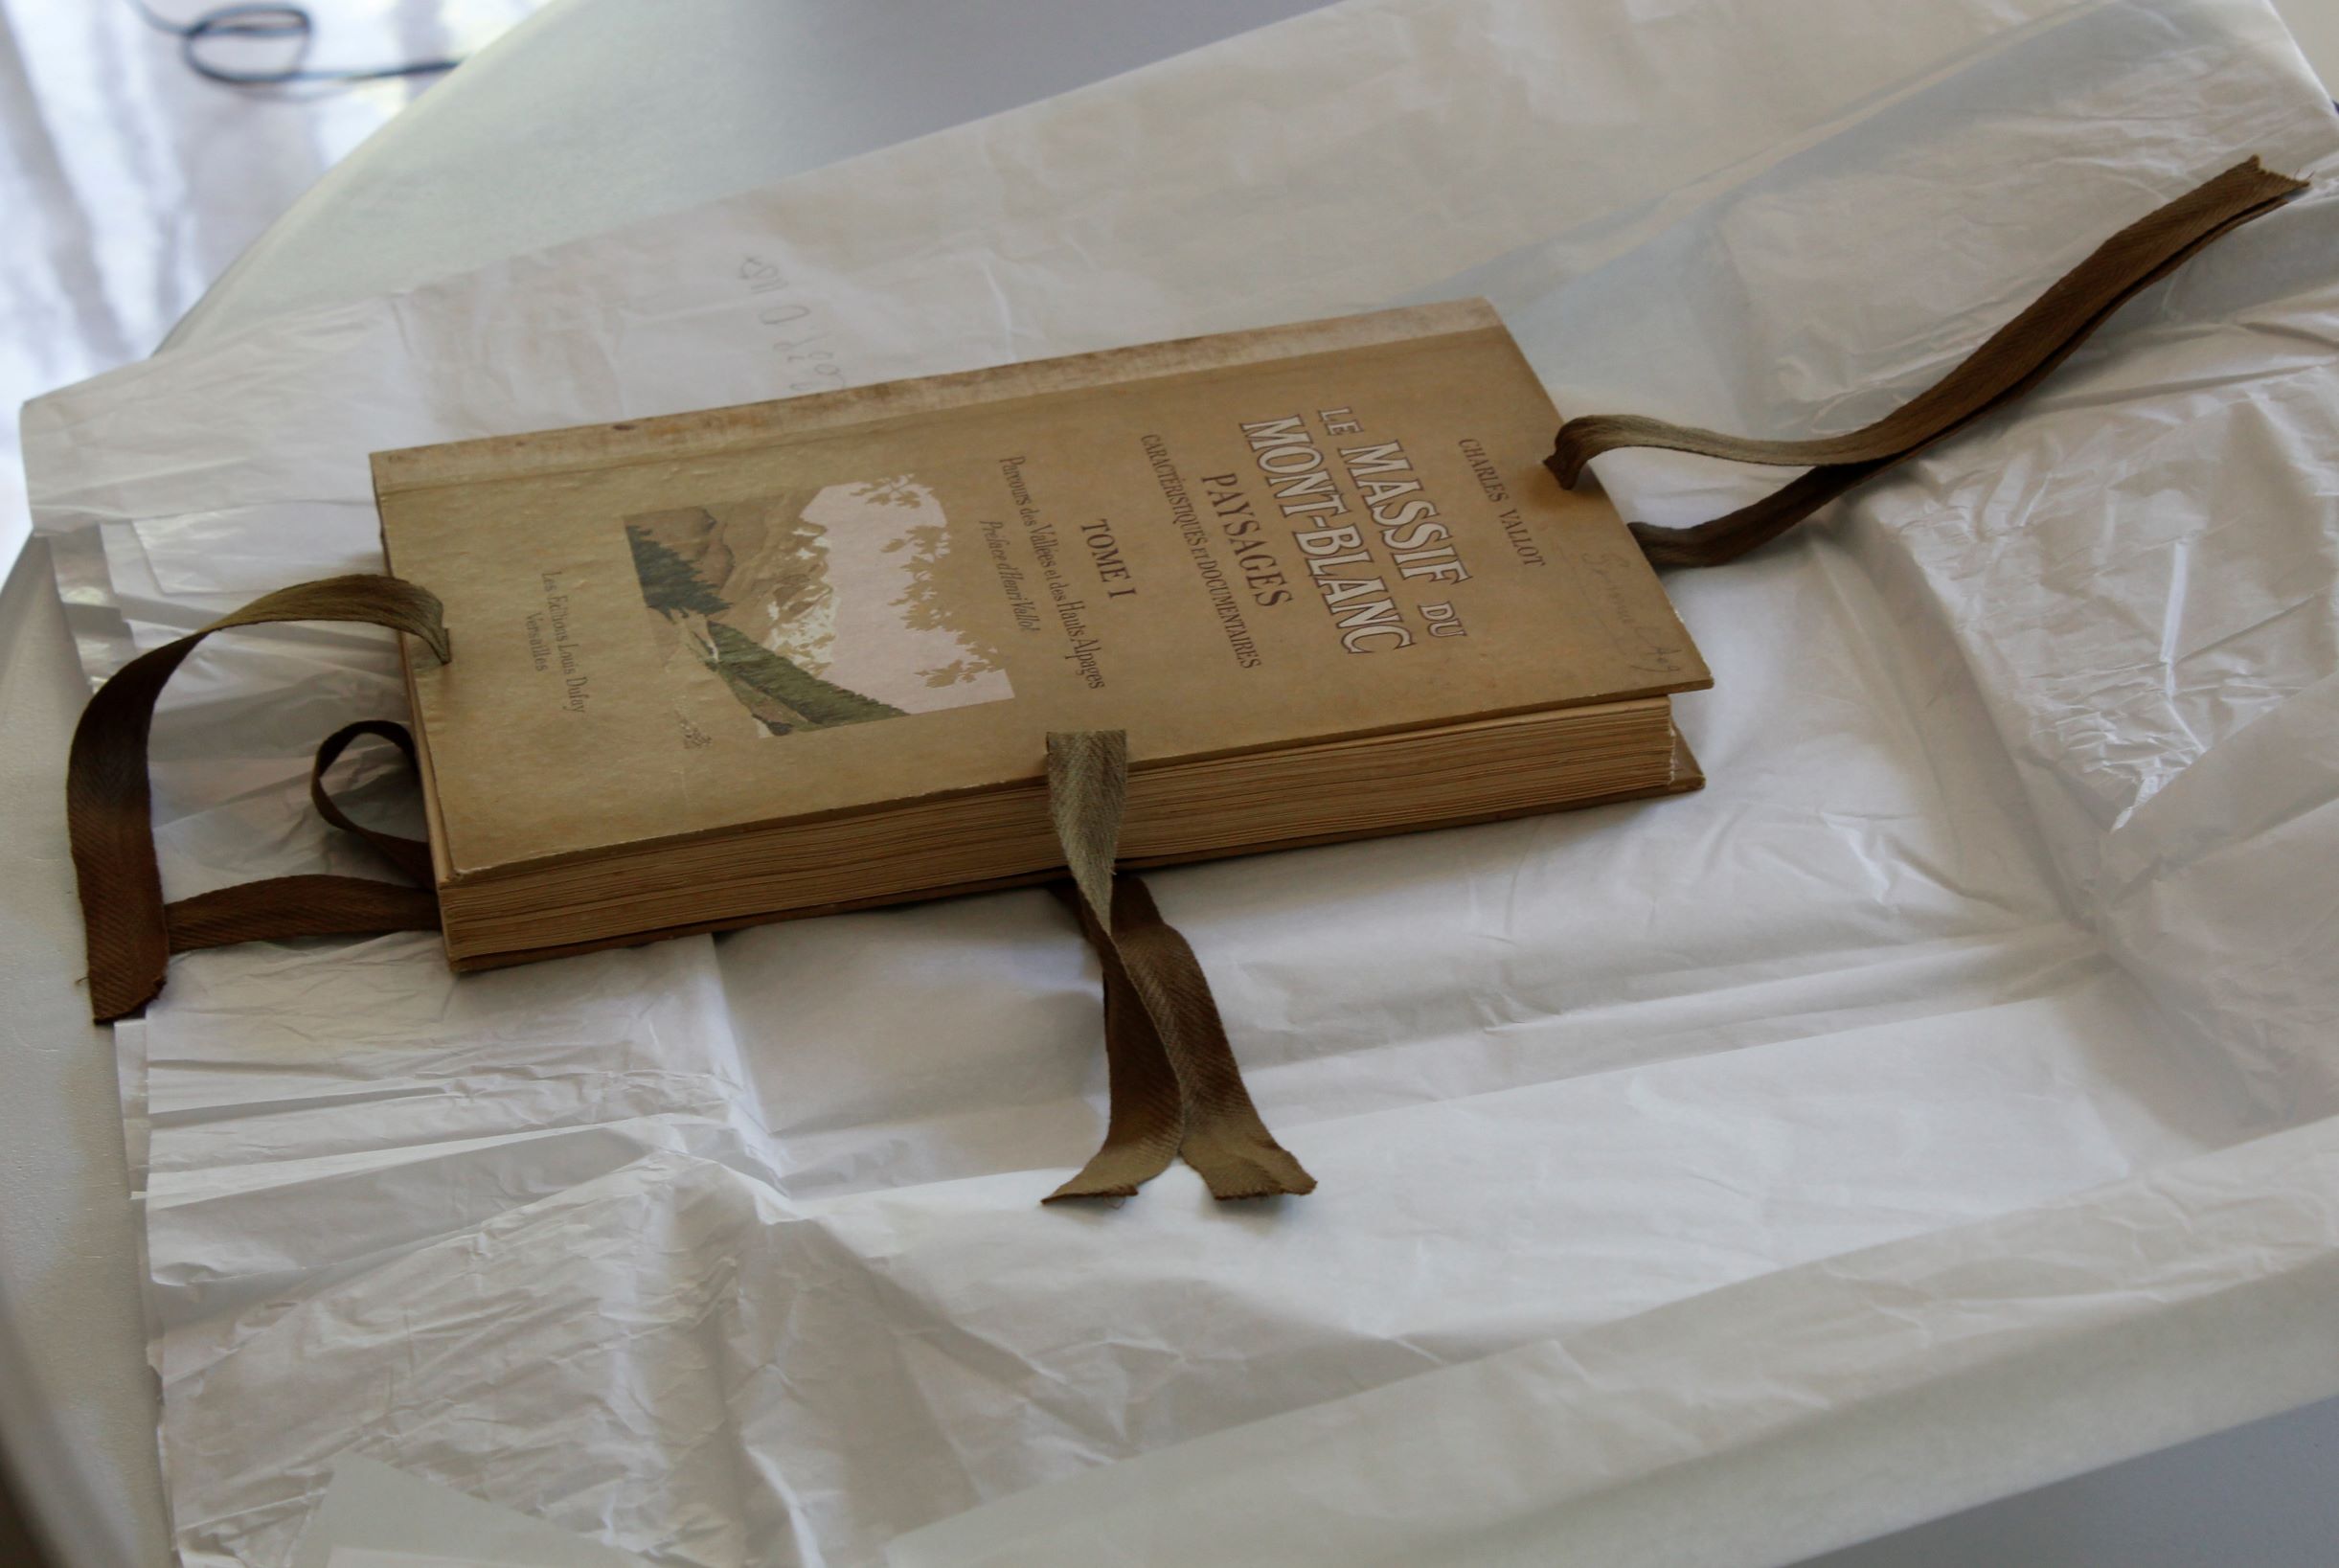 Actualités des collections du musée Alpin : retour de restauration de documents reliés ©musée Alpin